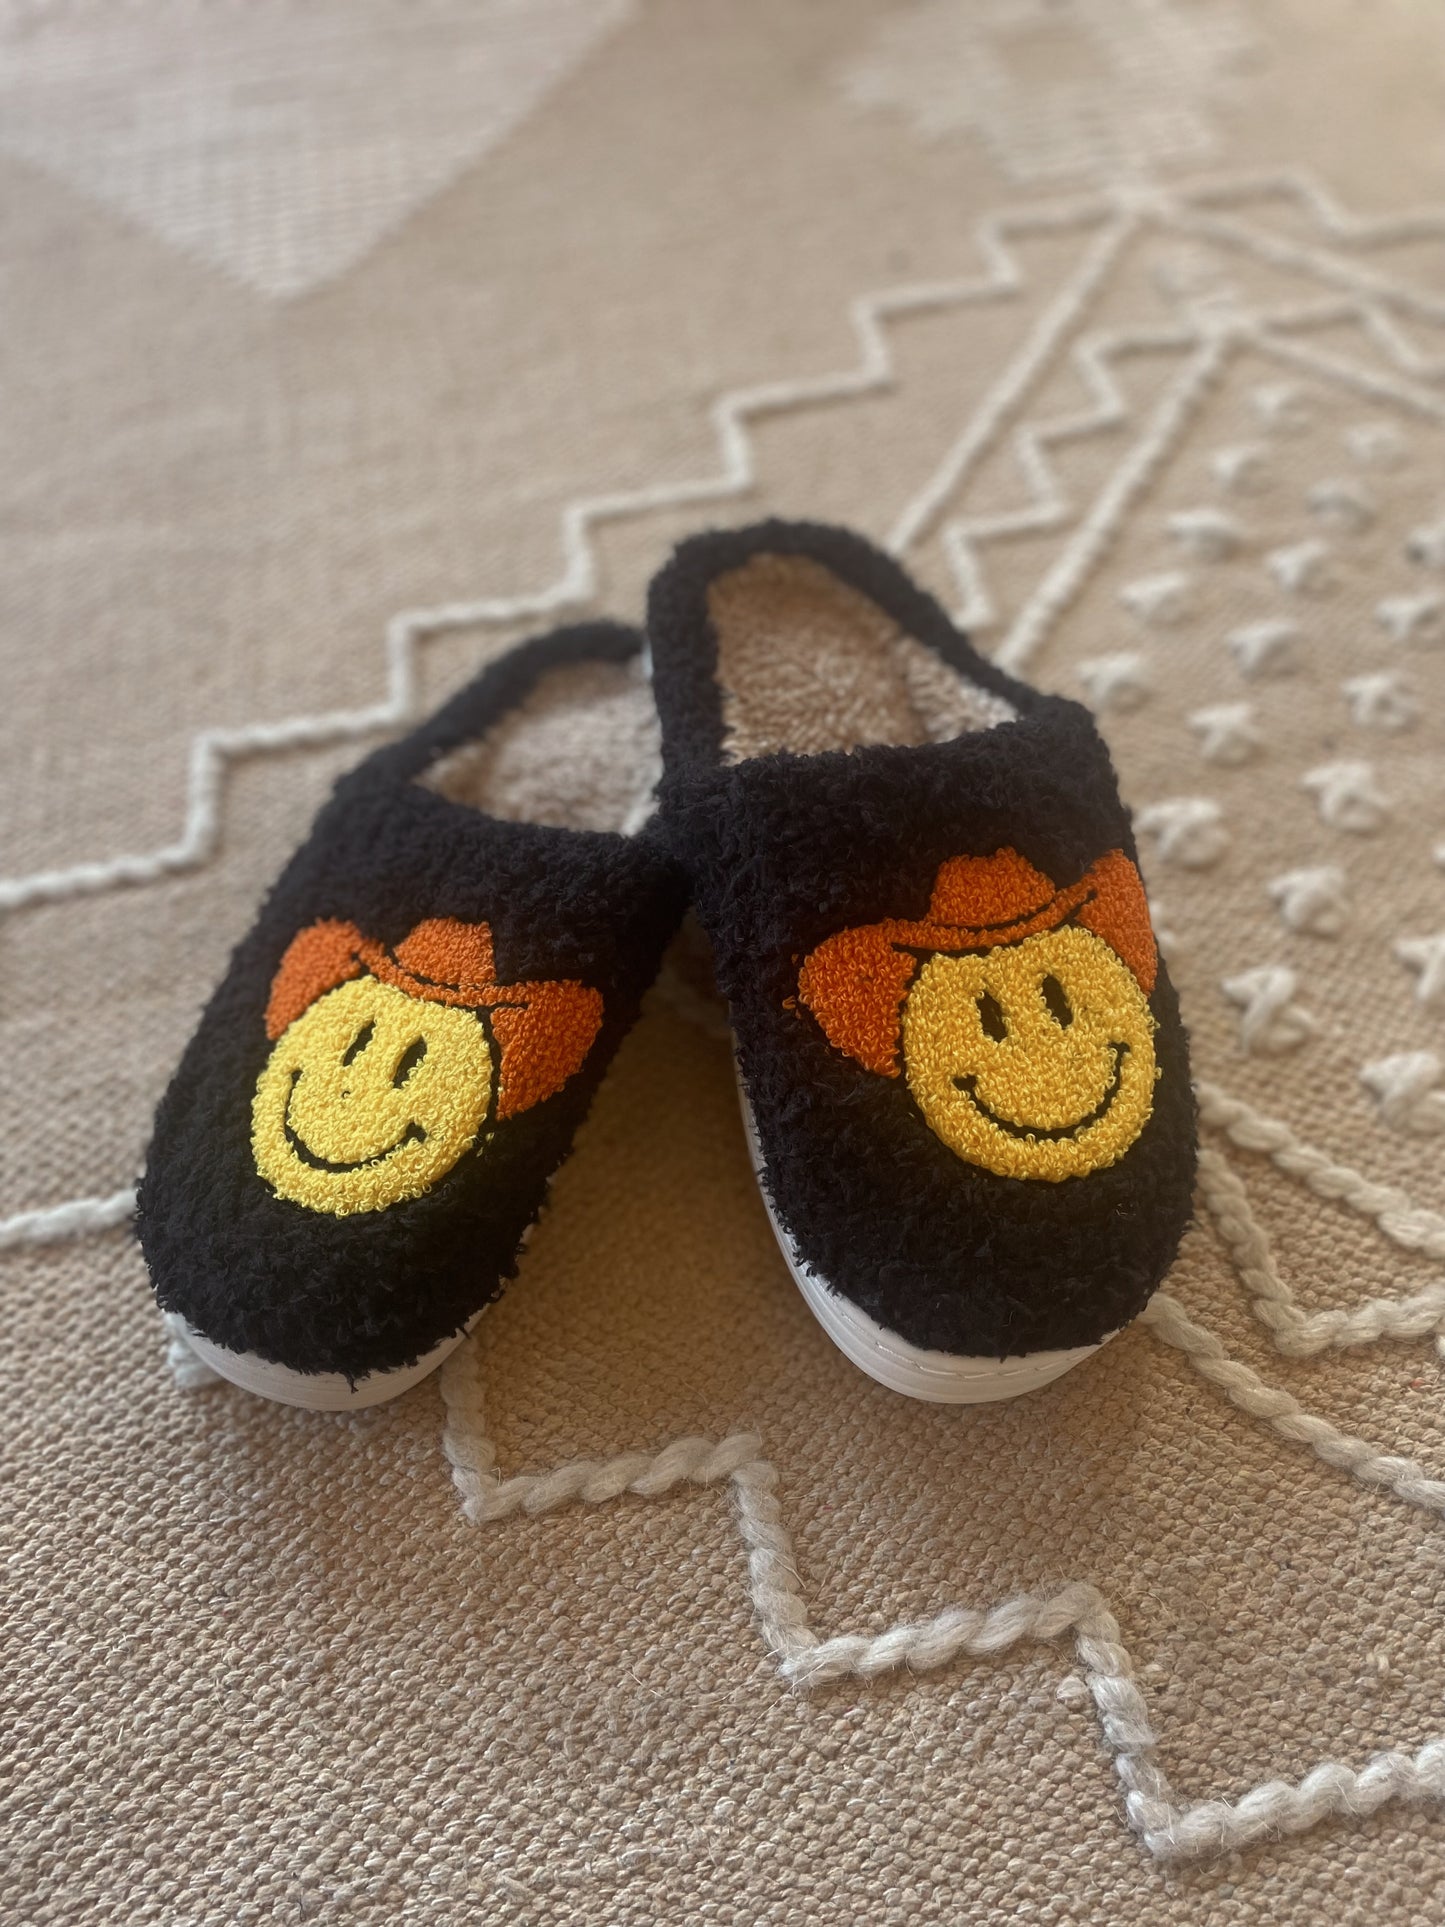 Black slippers